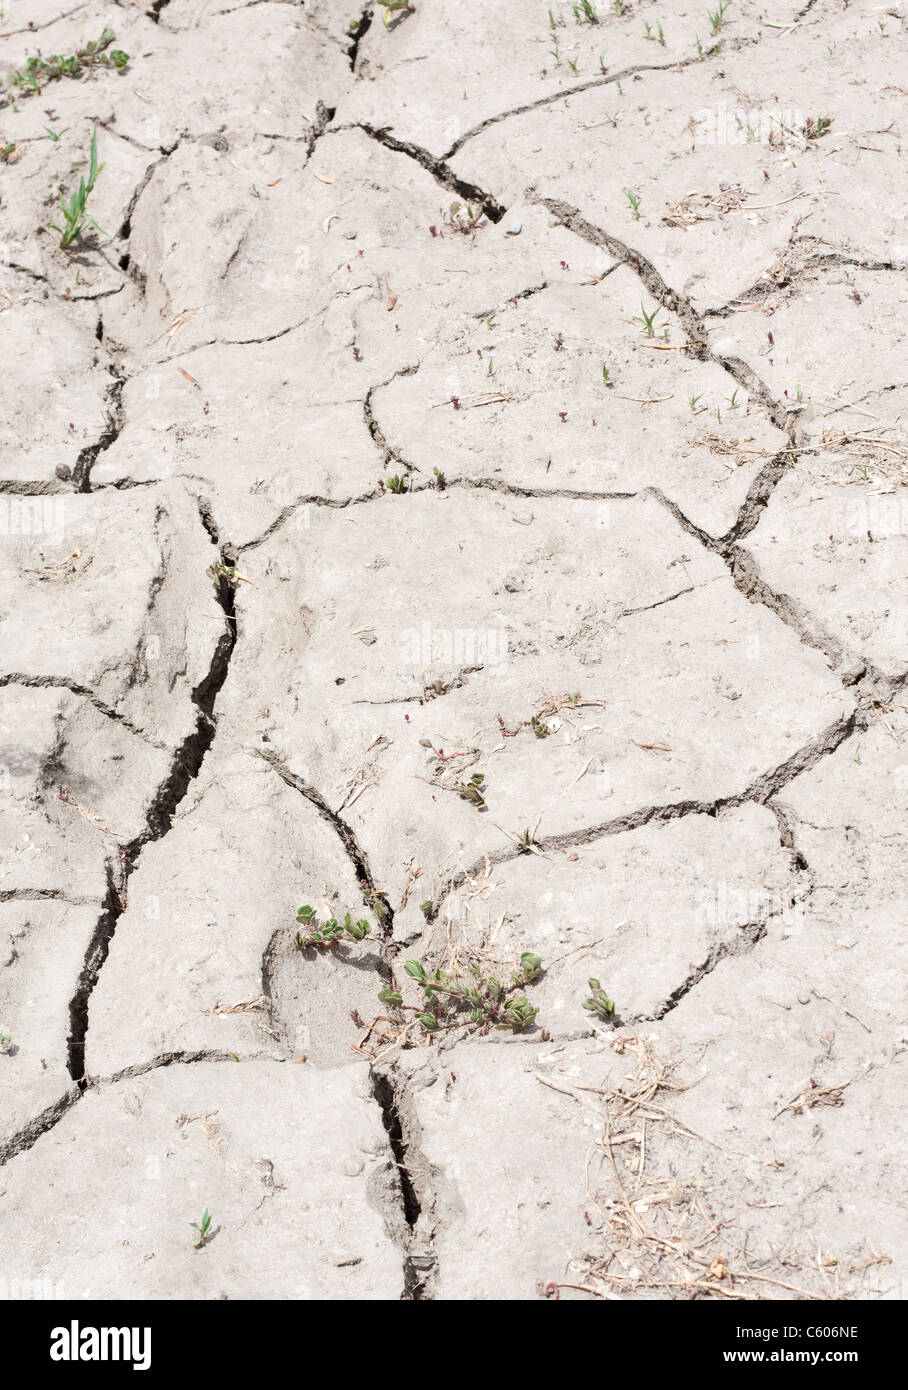 Eine Strecke von rissige, ausgetrocknete, trockenes Land wegen Trockenheit. Stockfoto